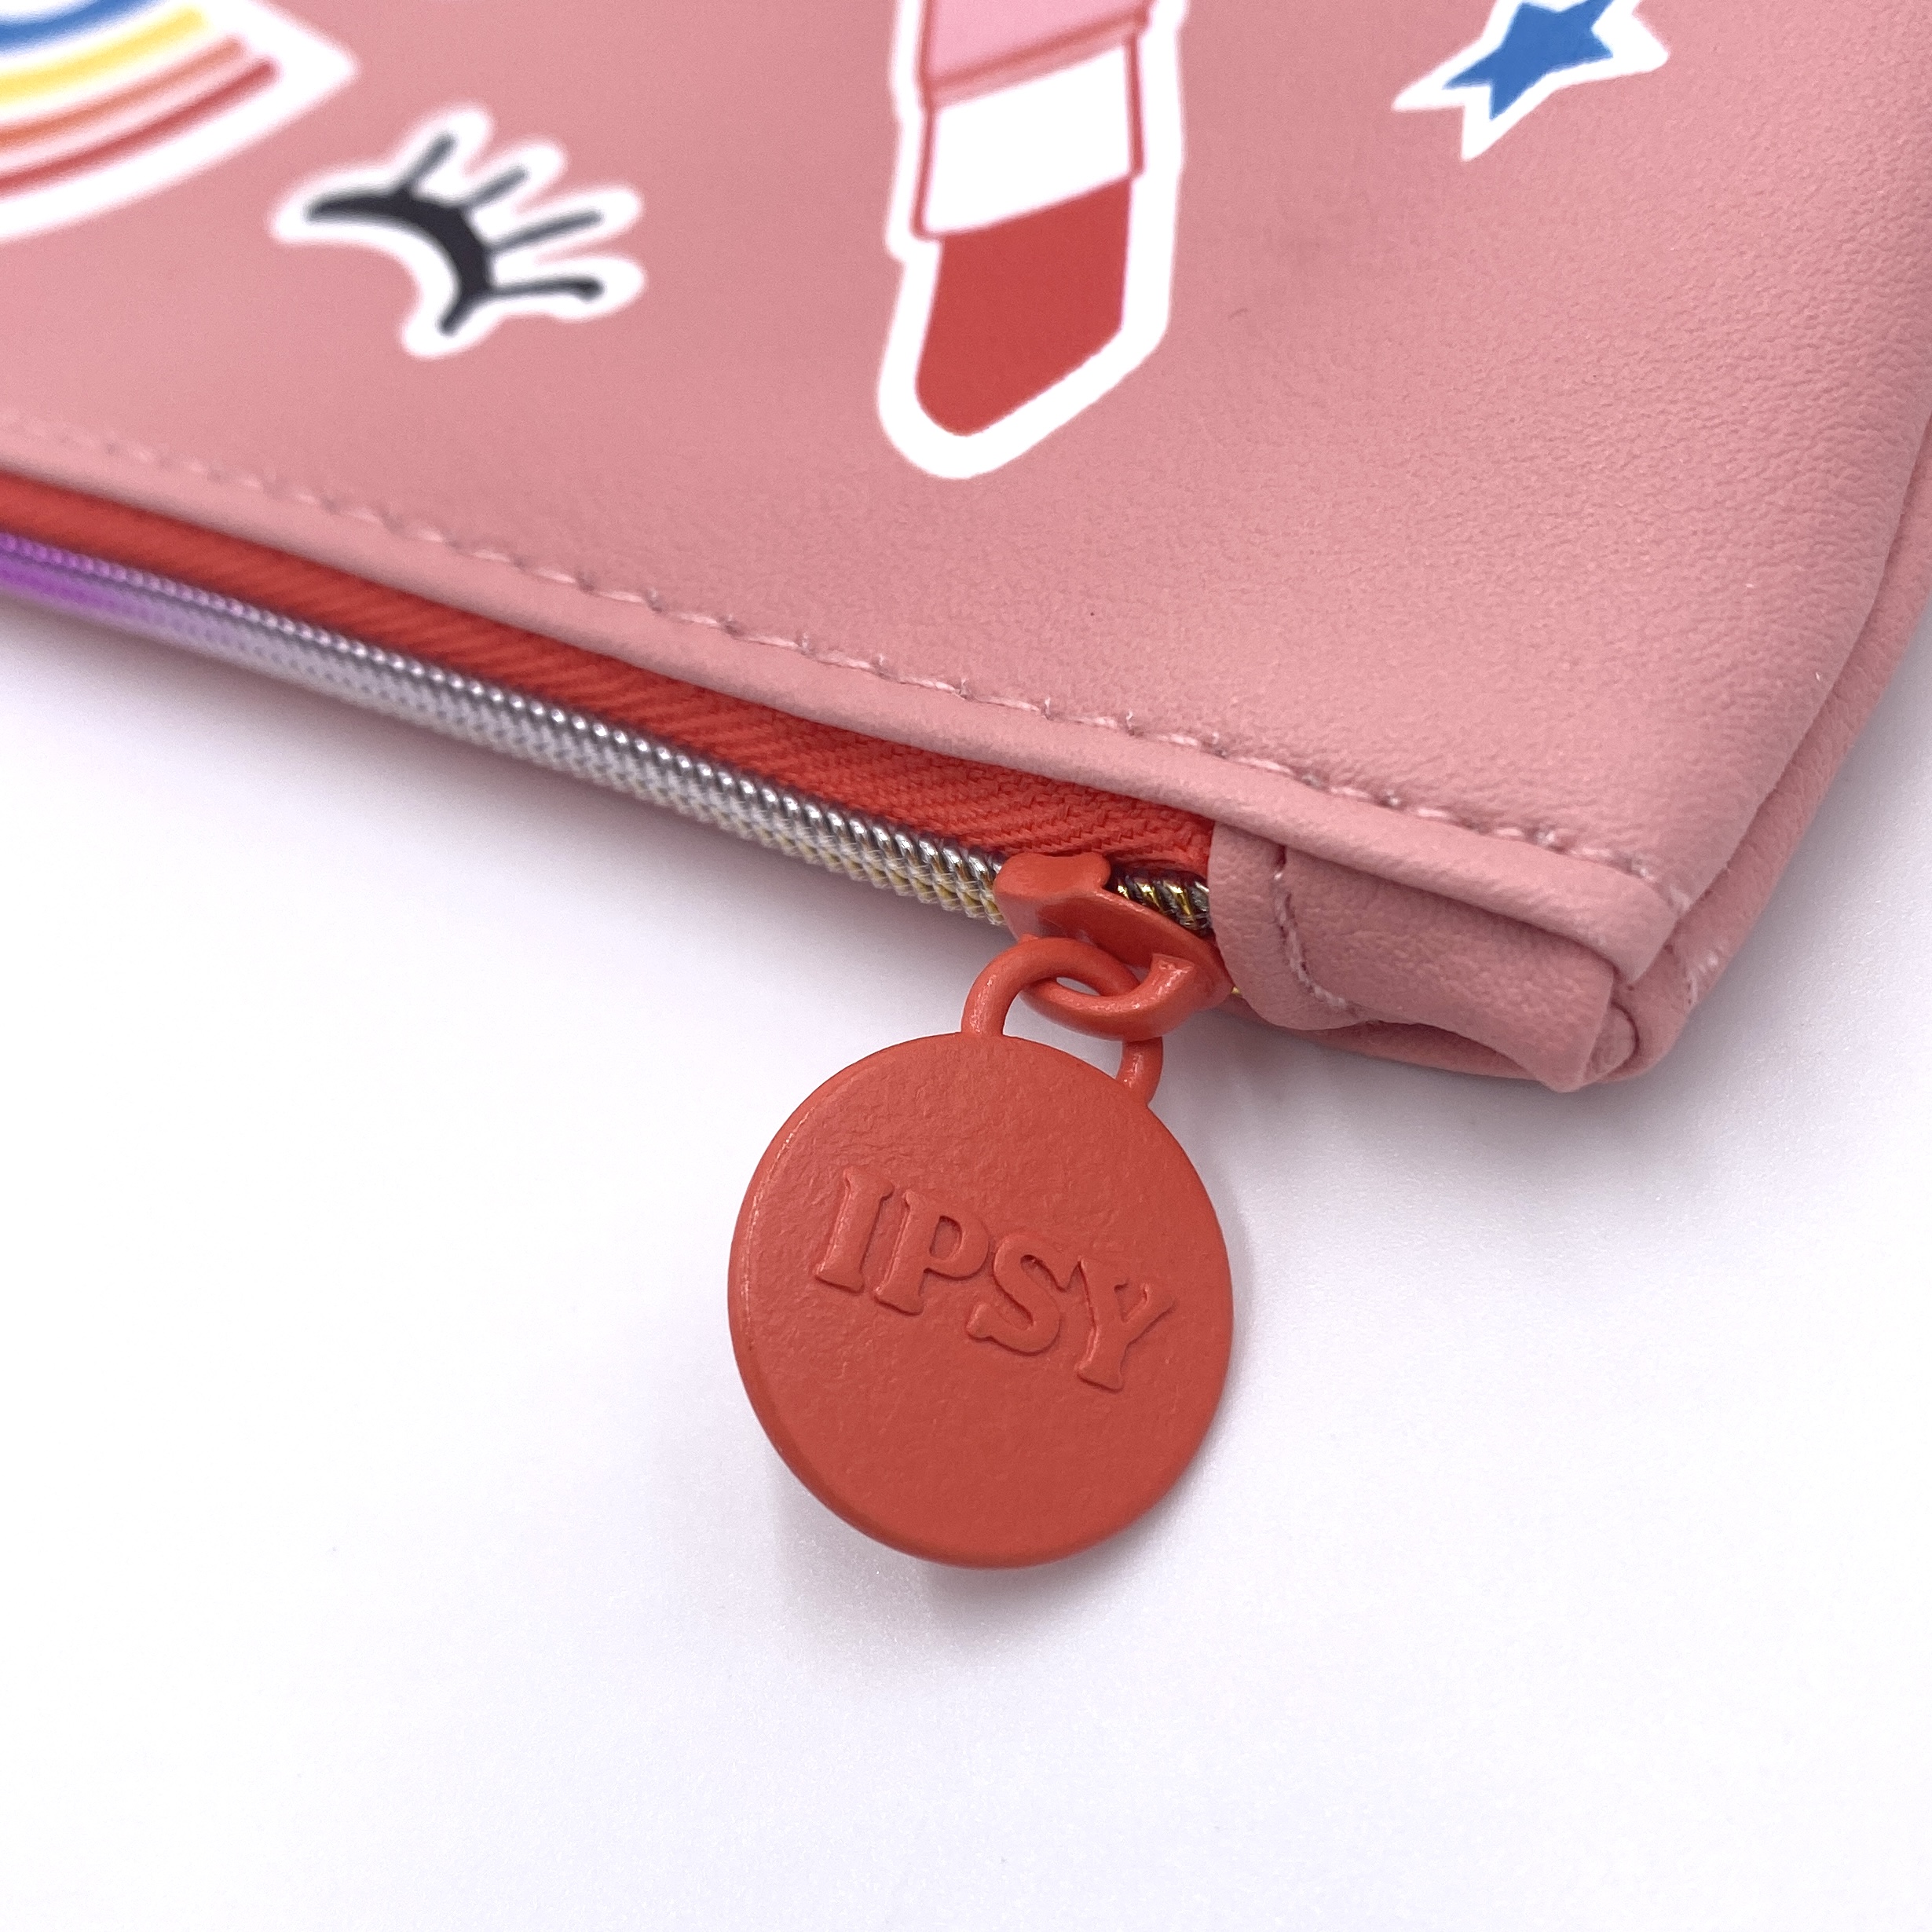 Zipper on Bag for Ipsy Glam Bag June 2021